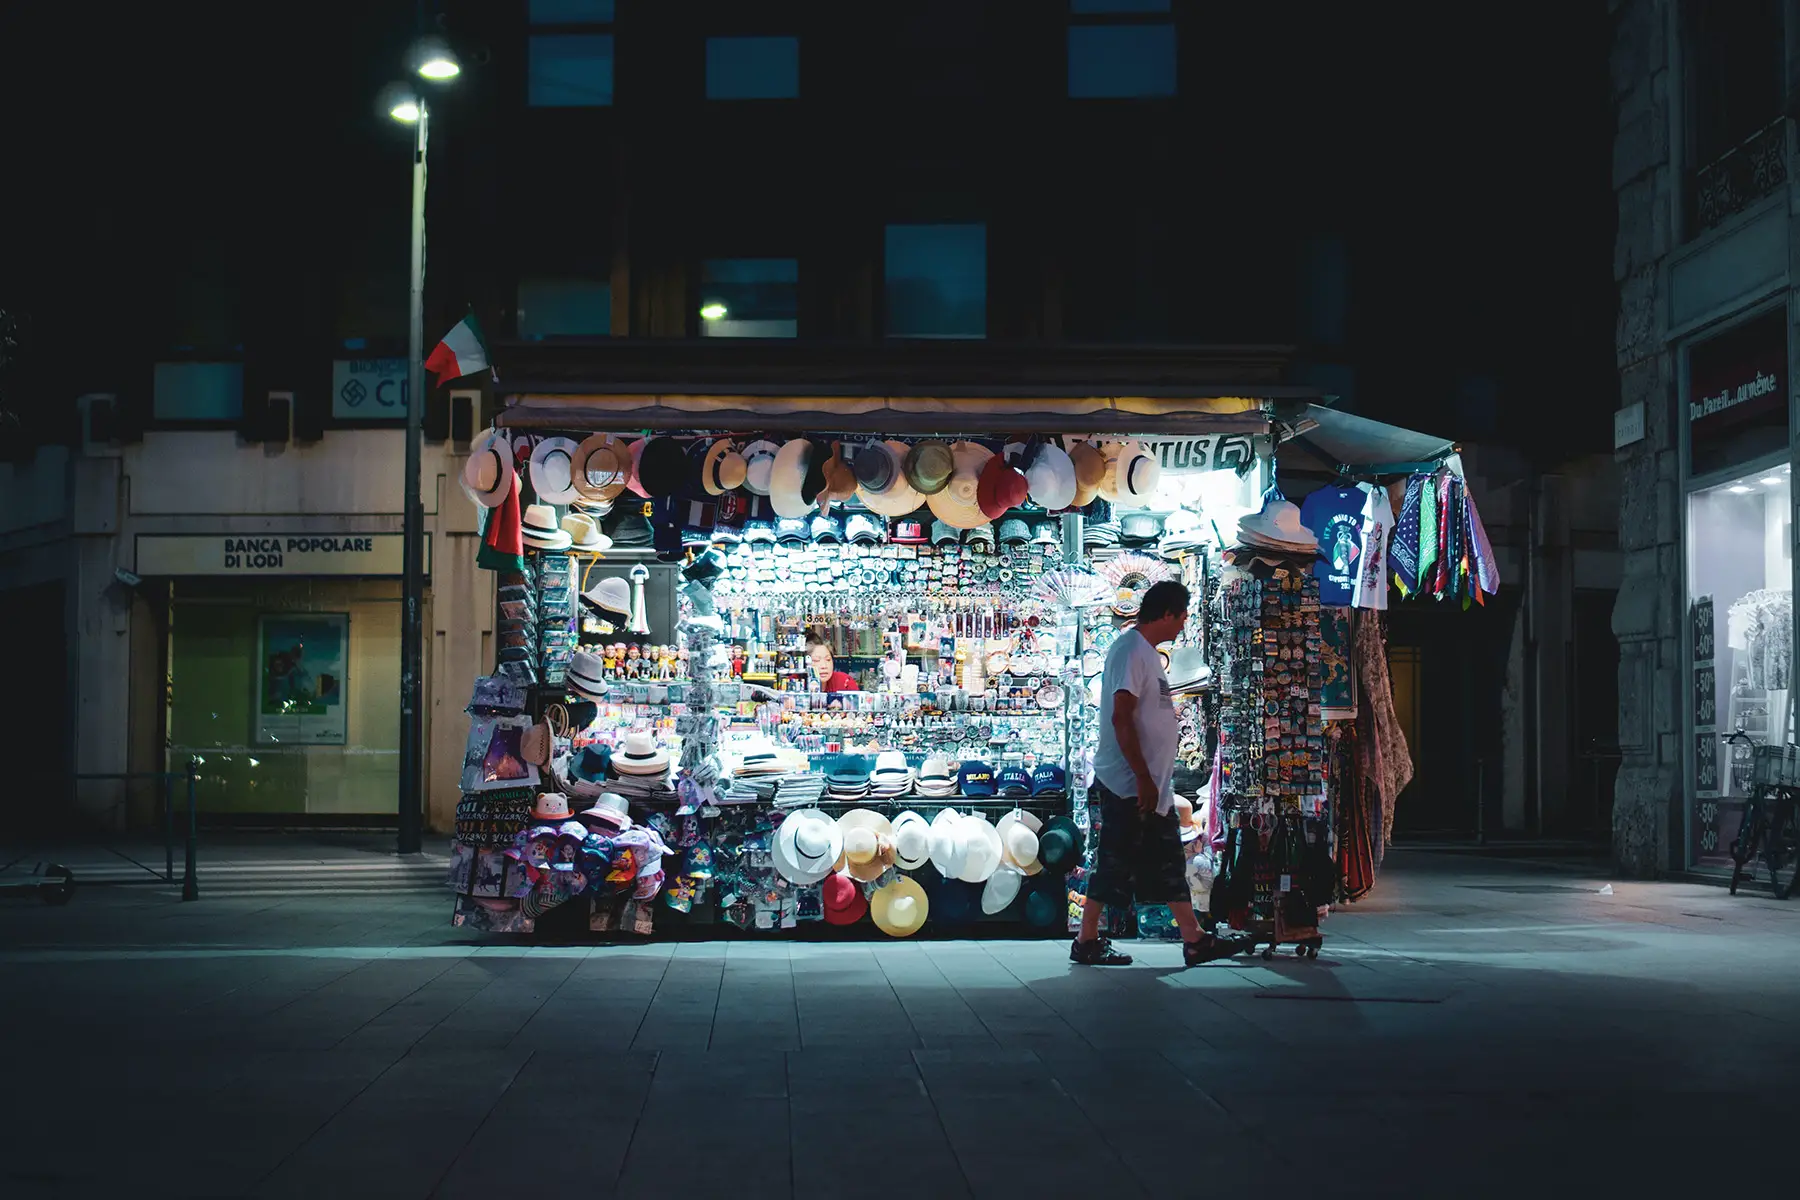 Night kiosk in Milano, Italy